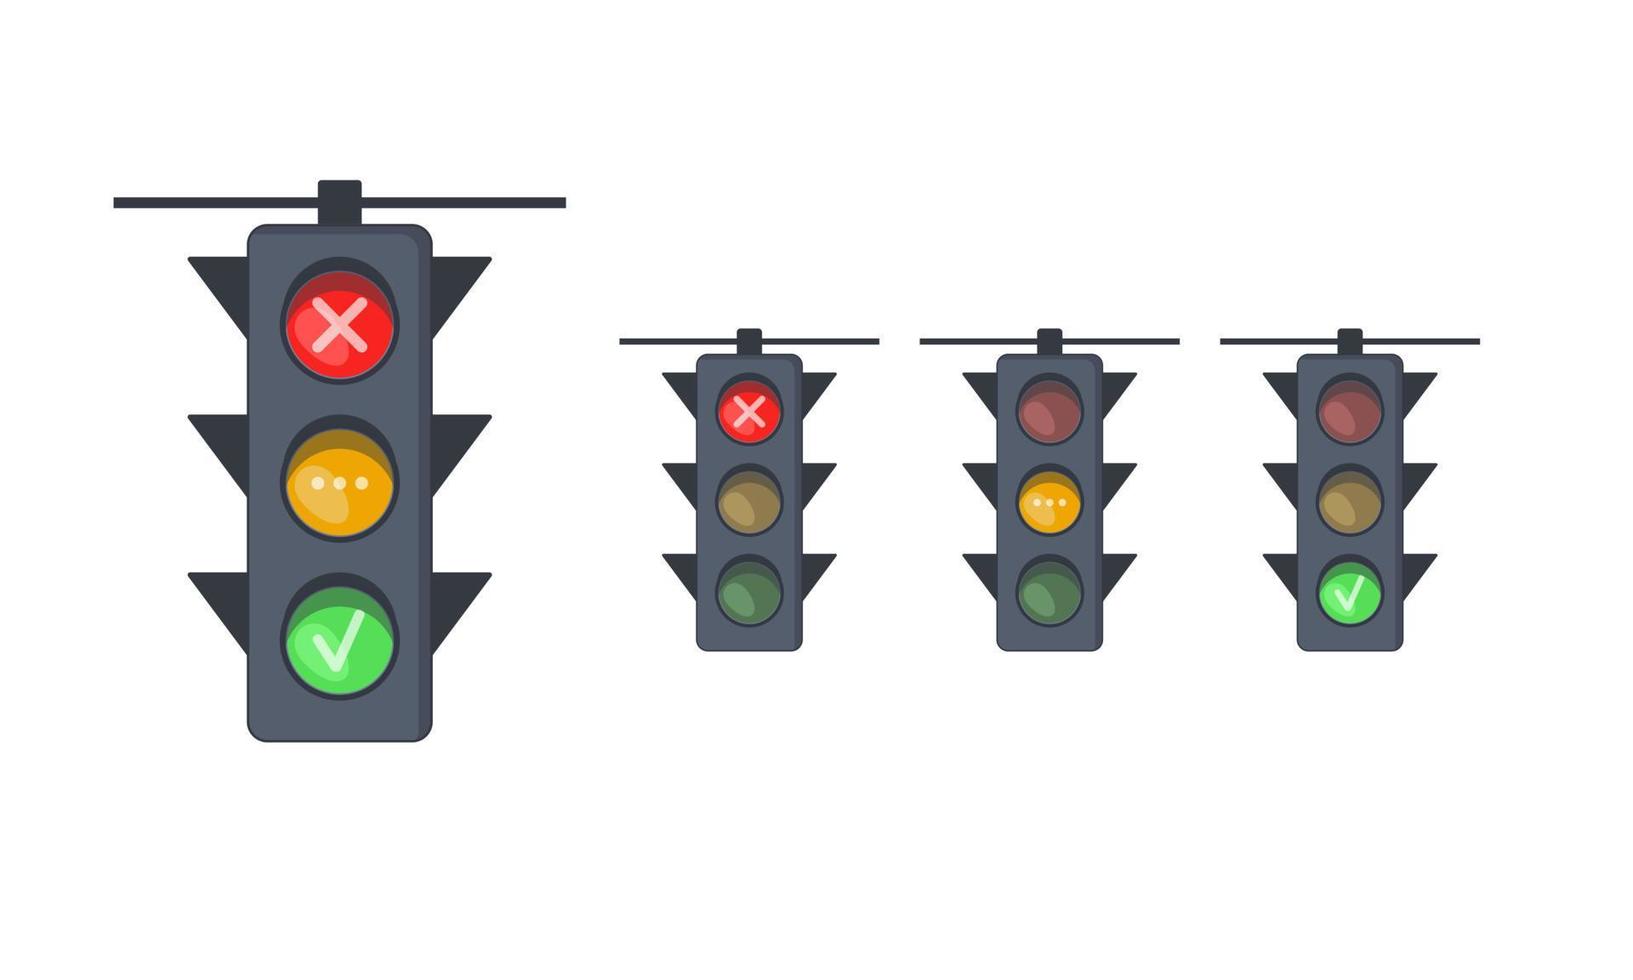 satz von ampeln mit roten, gelben und grünen signalen. Ampeln mit Verbots-, Erlaubnis- und Wartezeichen. Ausrüstung für die Straßenbewegungskontrolle. vektor